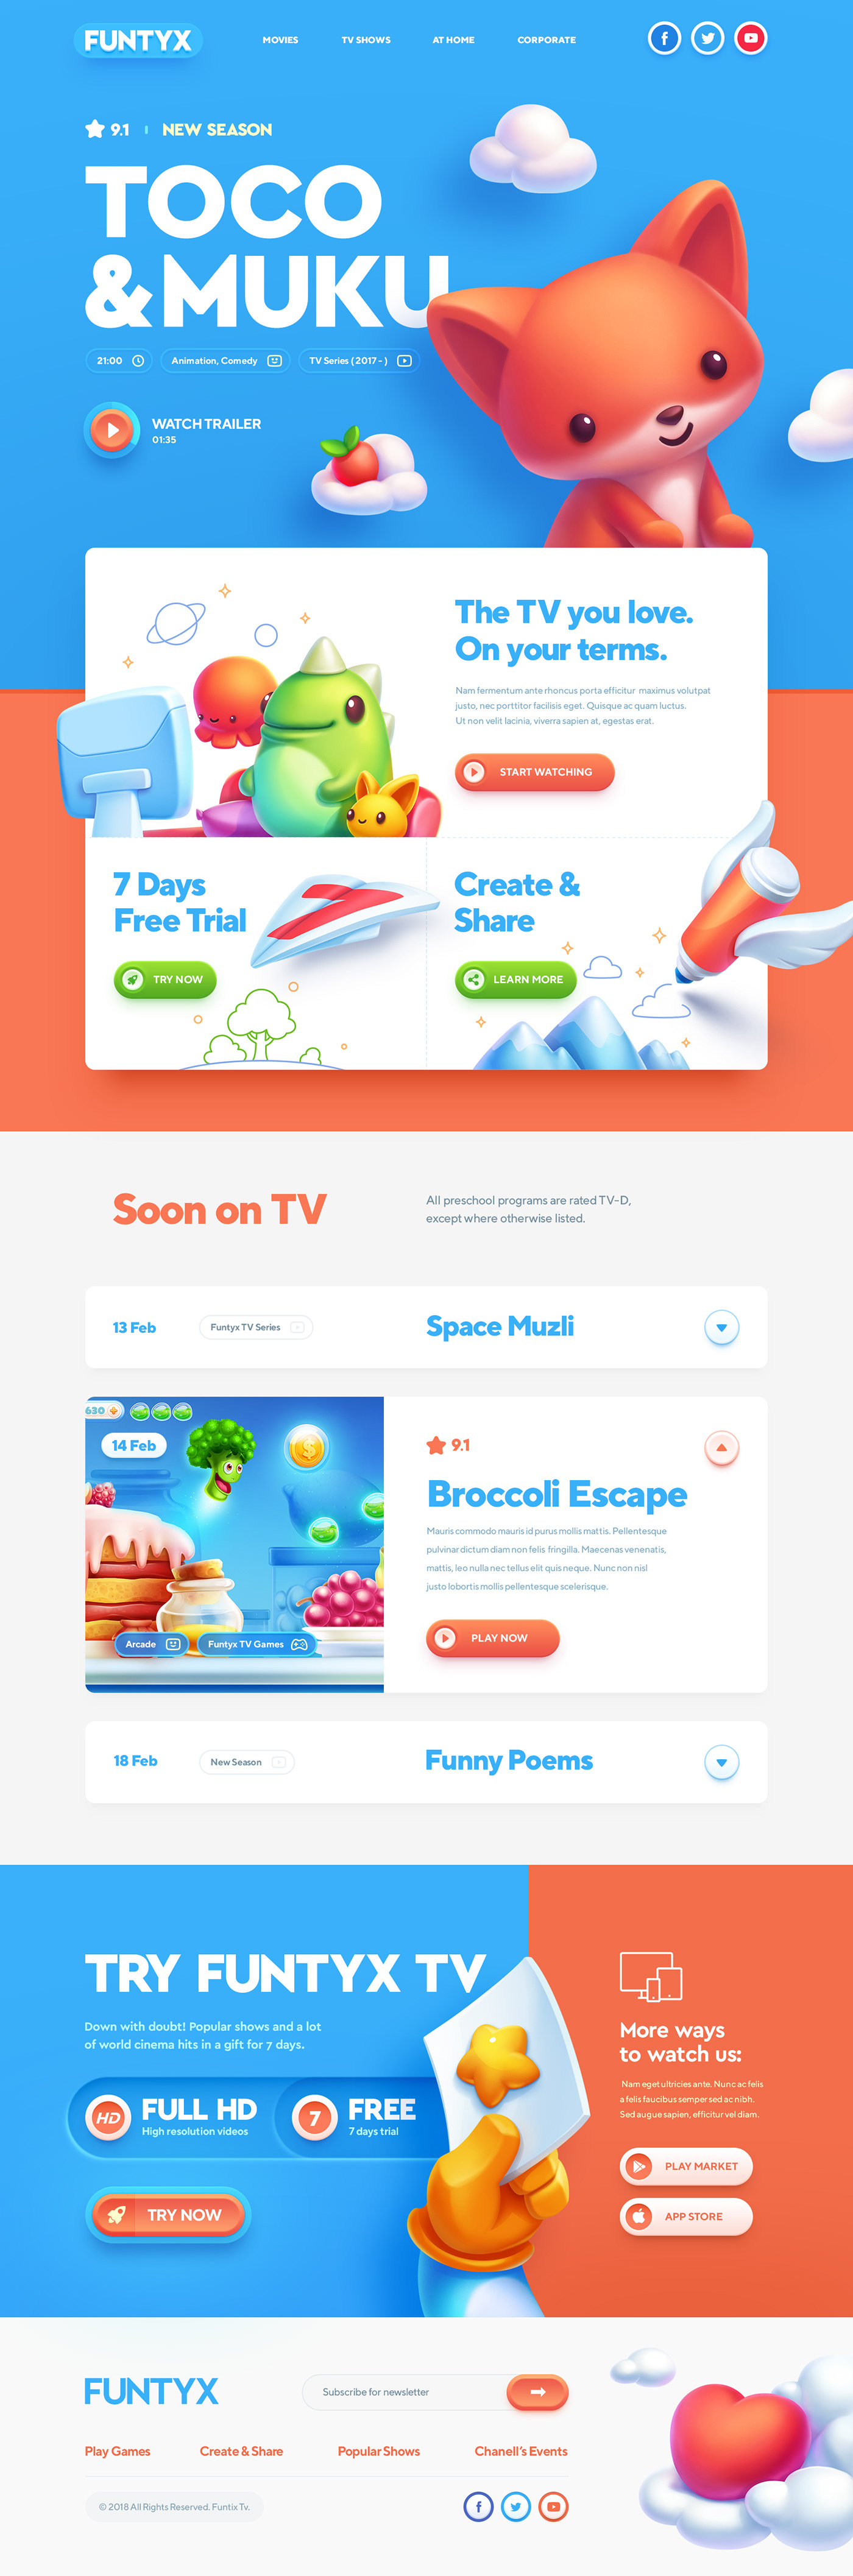 website design idea #187: Website design: Best for Kids!